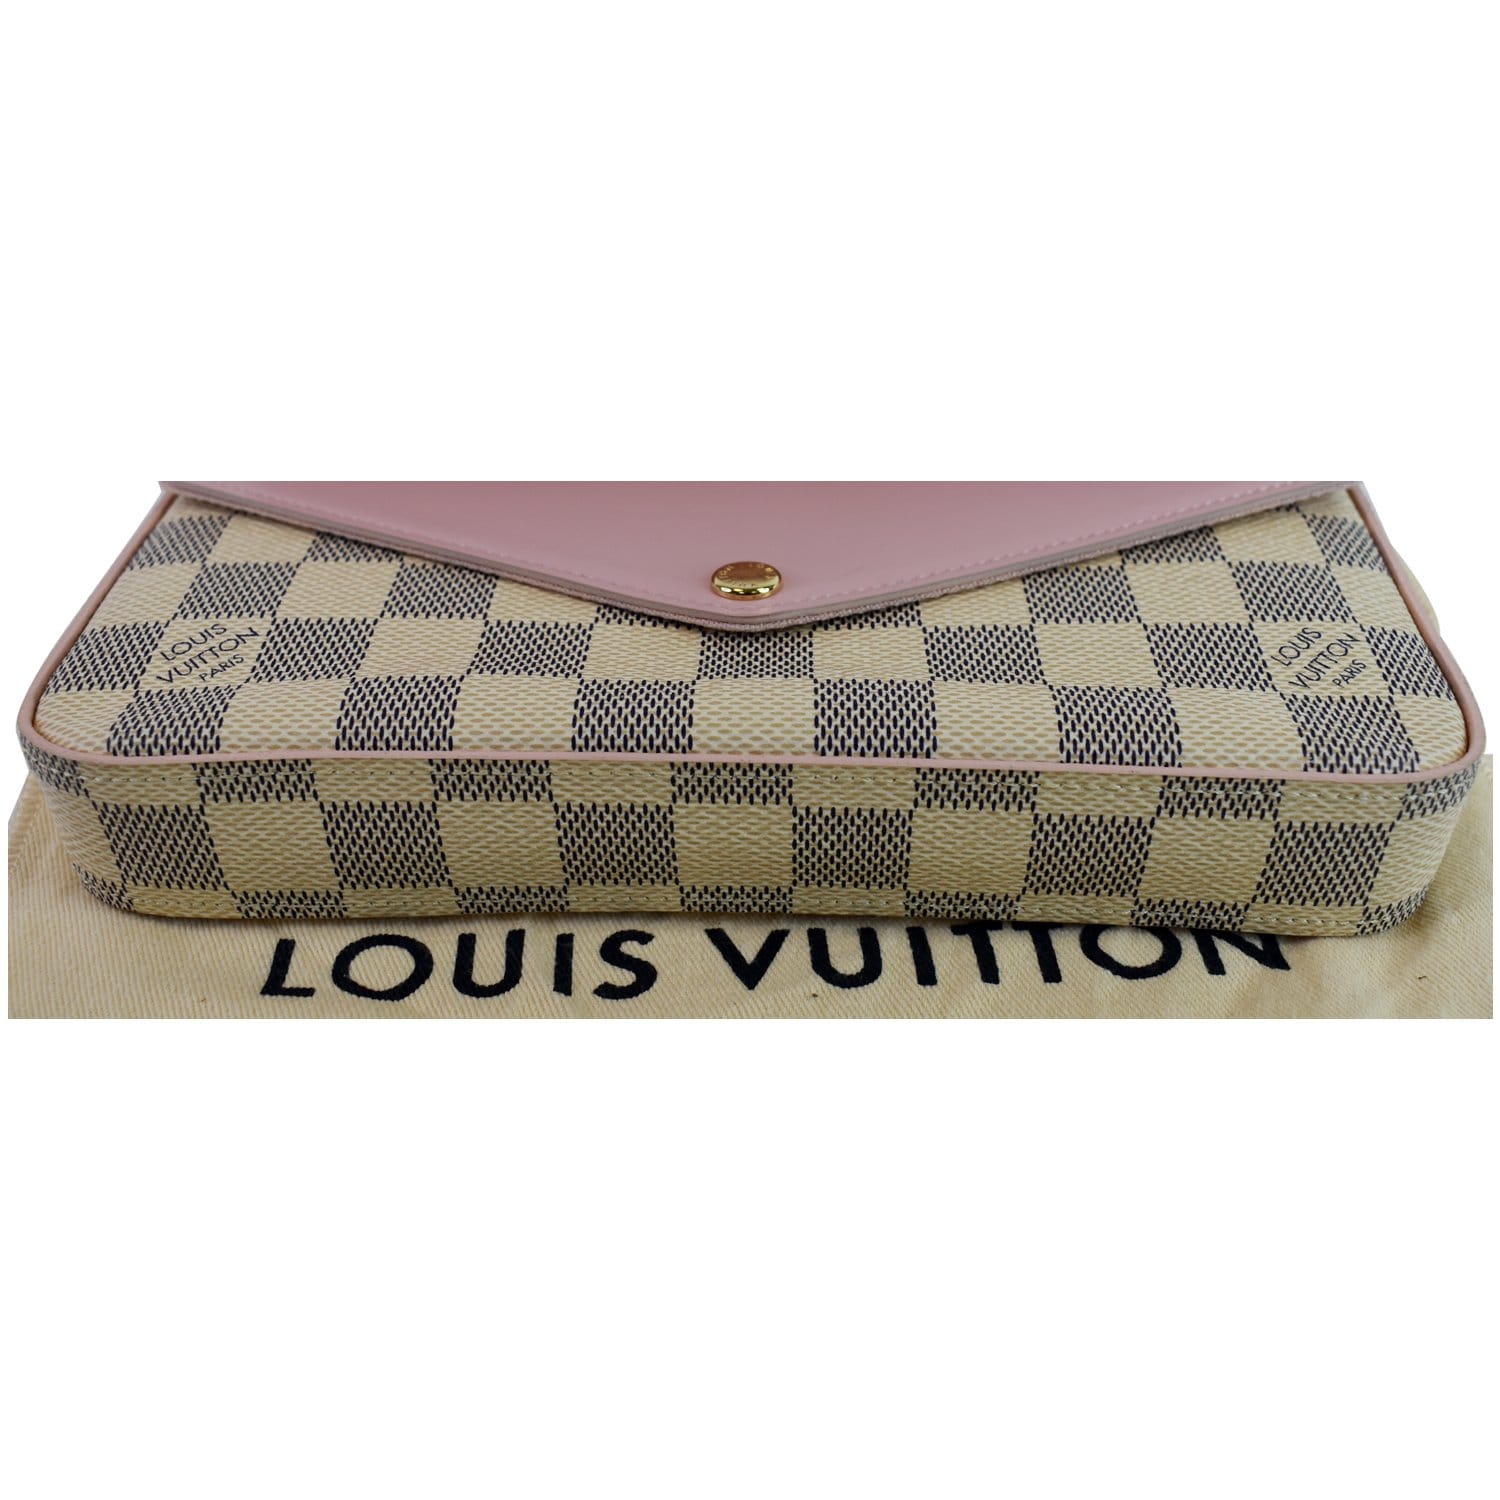 Louis Vuitton Damier Azur Pochette Felicie – Savonches